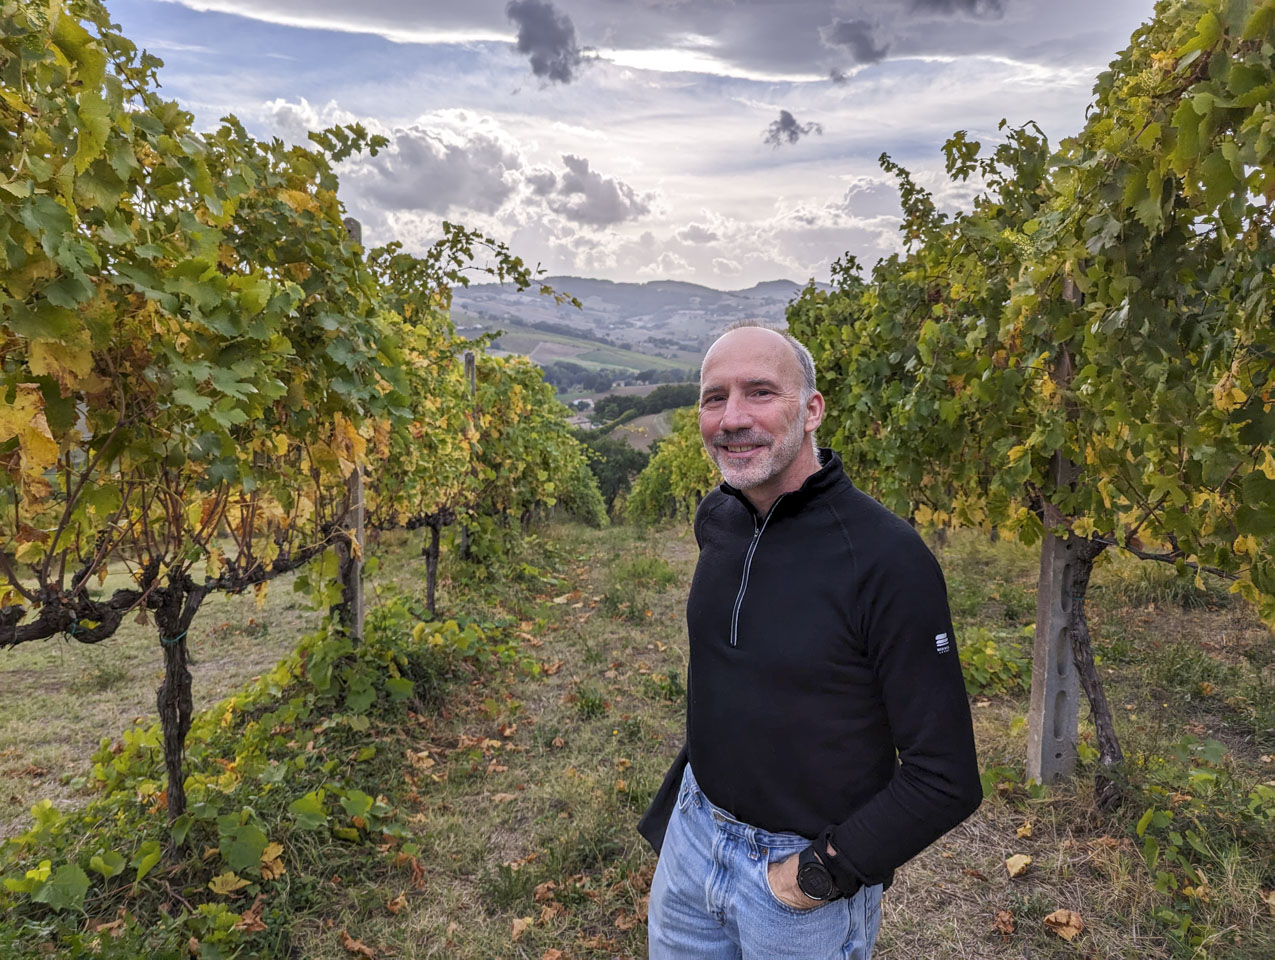 Paul standing between rows of grape vines